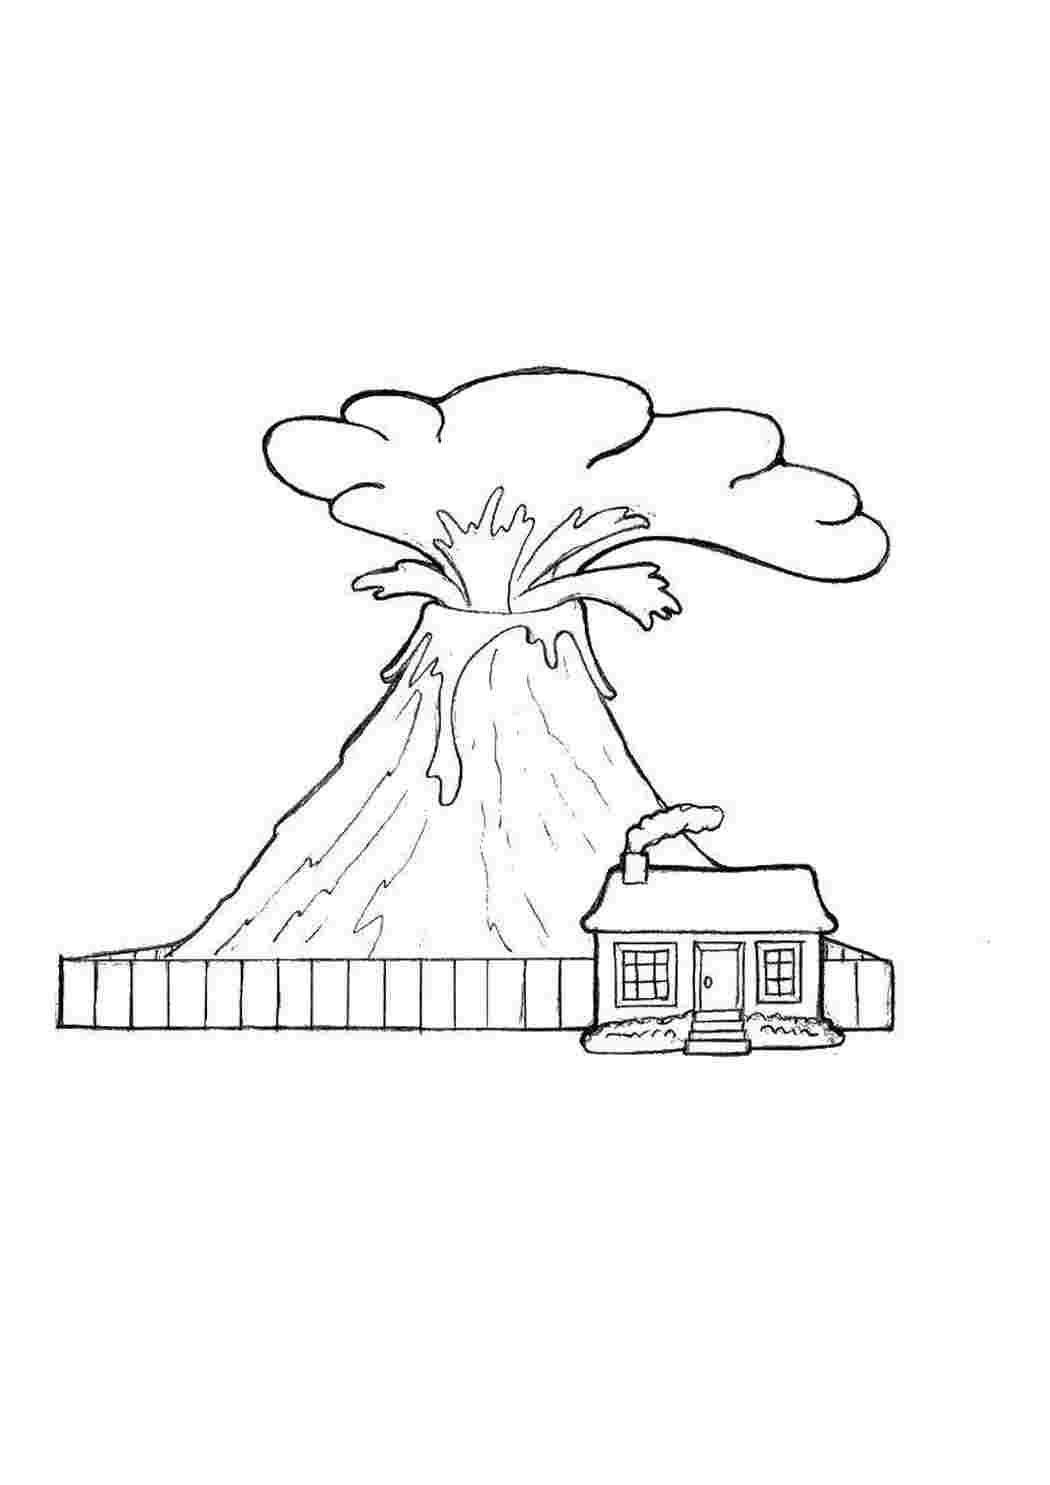 Извержение вулкана рисунок поэтапно